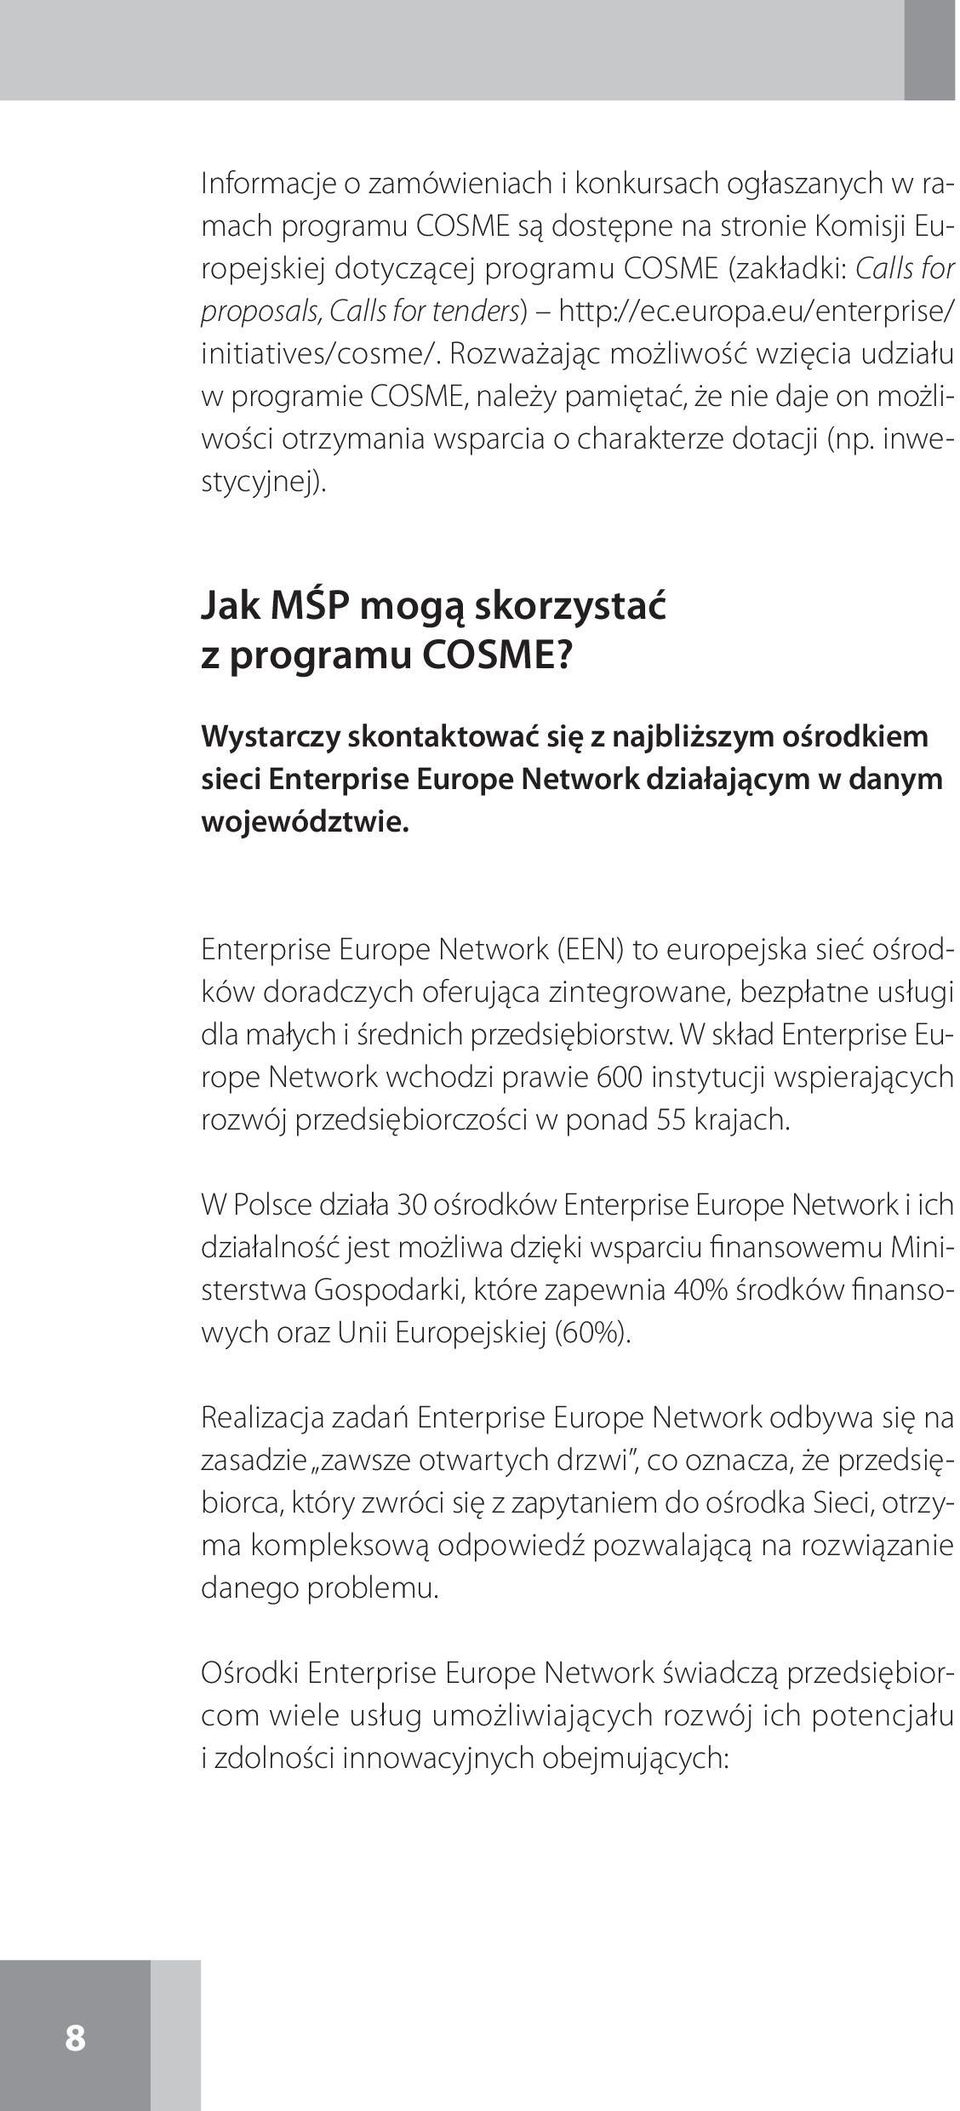 inwestycyjnej). Jak MŚP mogą skorzystać z programu COSME? Wystarczy skontaktować się z najbliższym ośrodkiem sieci Enterprise Europe Network działającym w danym województwie.